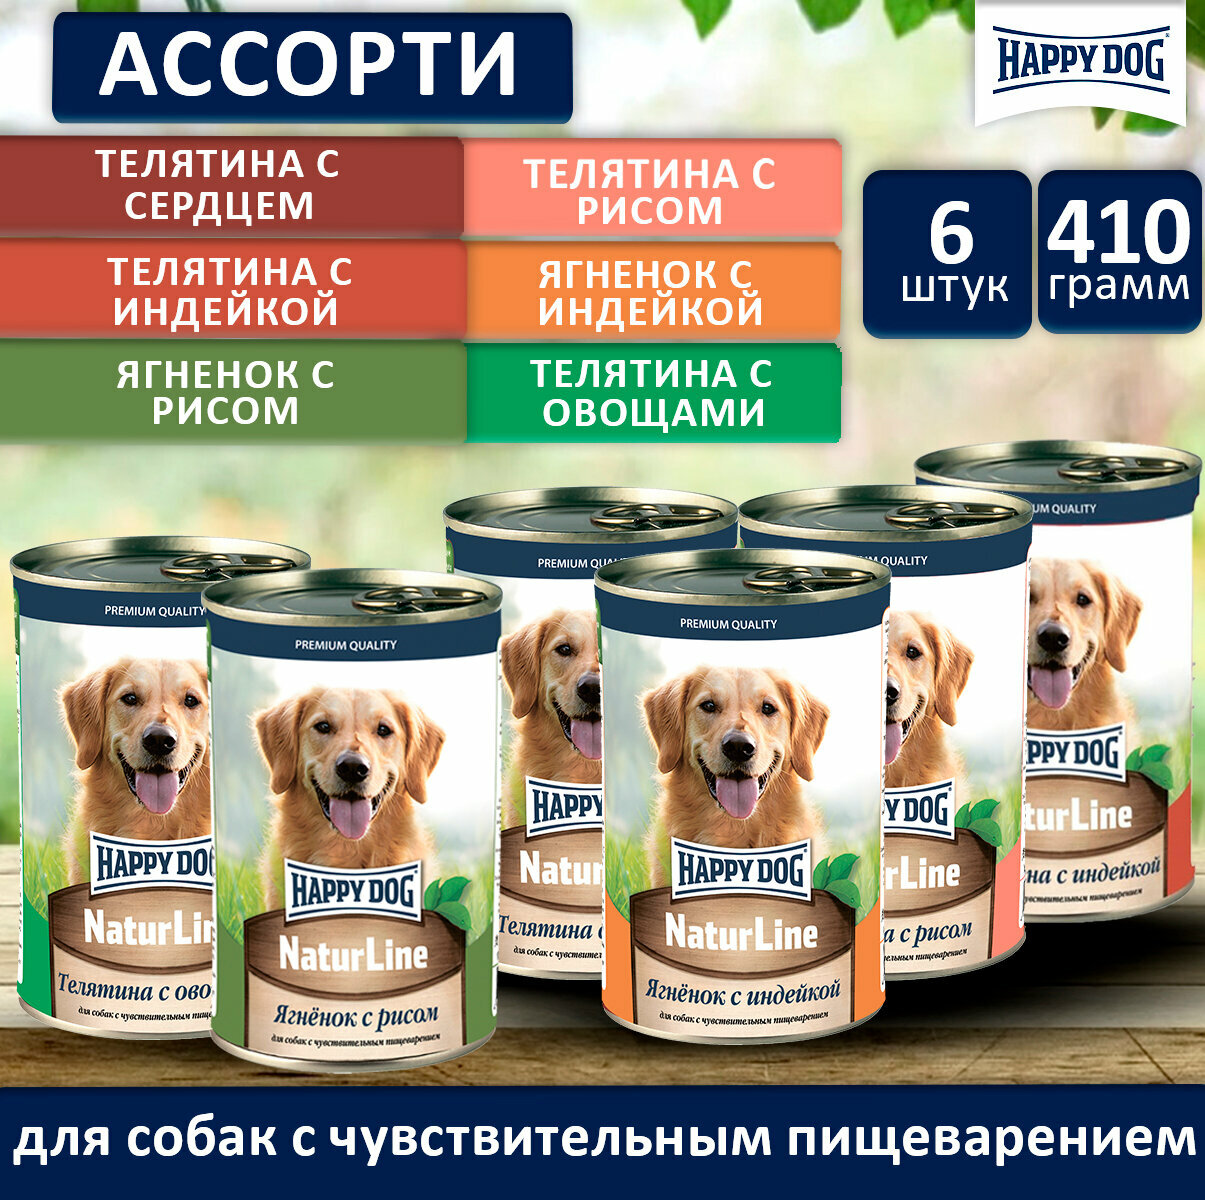 Консервы для собак Happy Dog NaturLine (Ассорти), 410 гр. 6 вкусов по одной банке